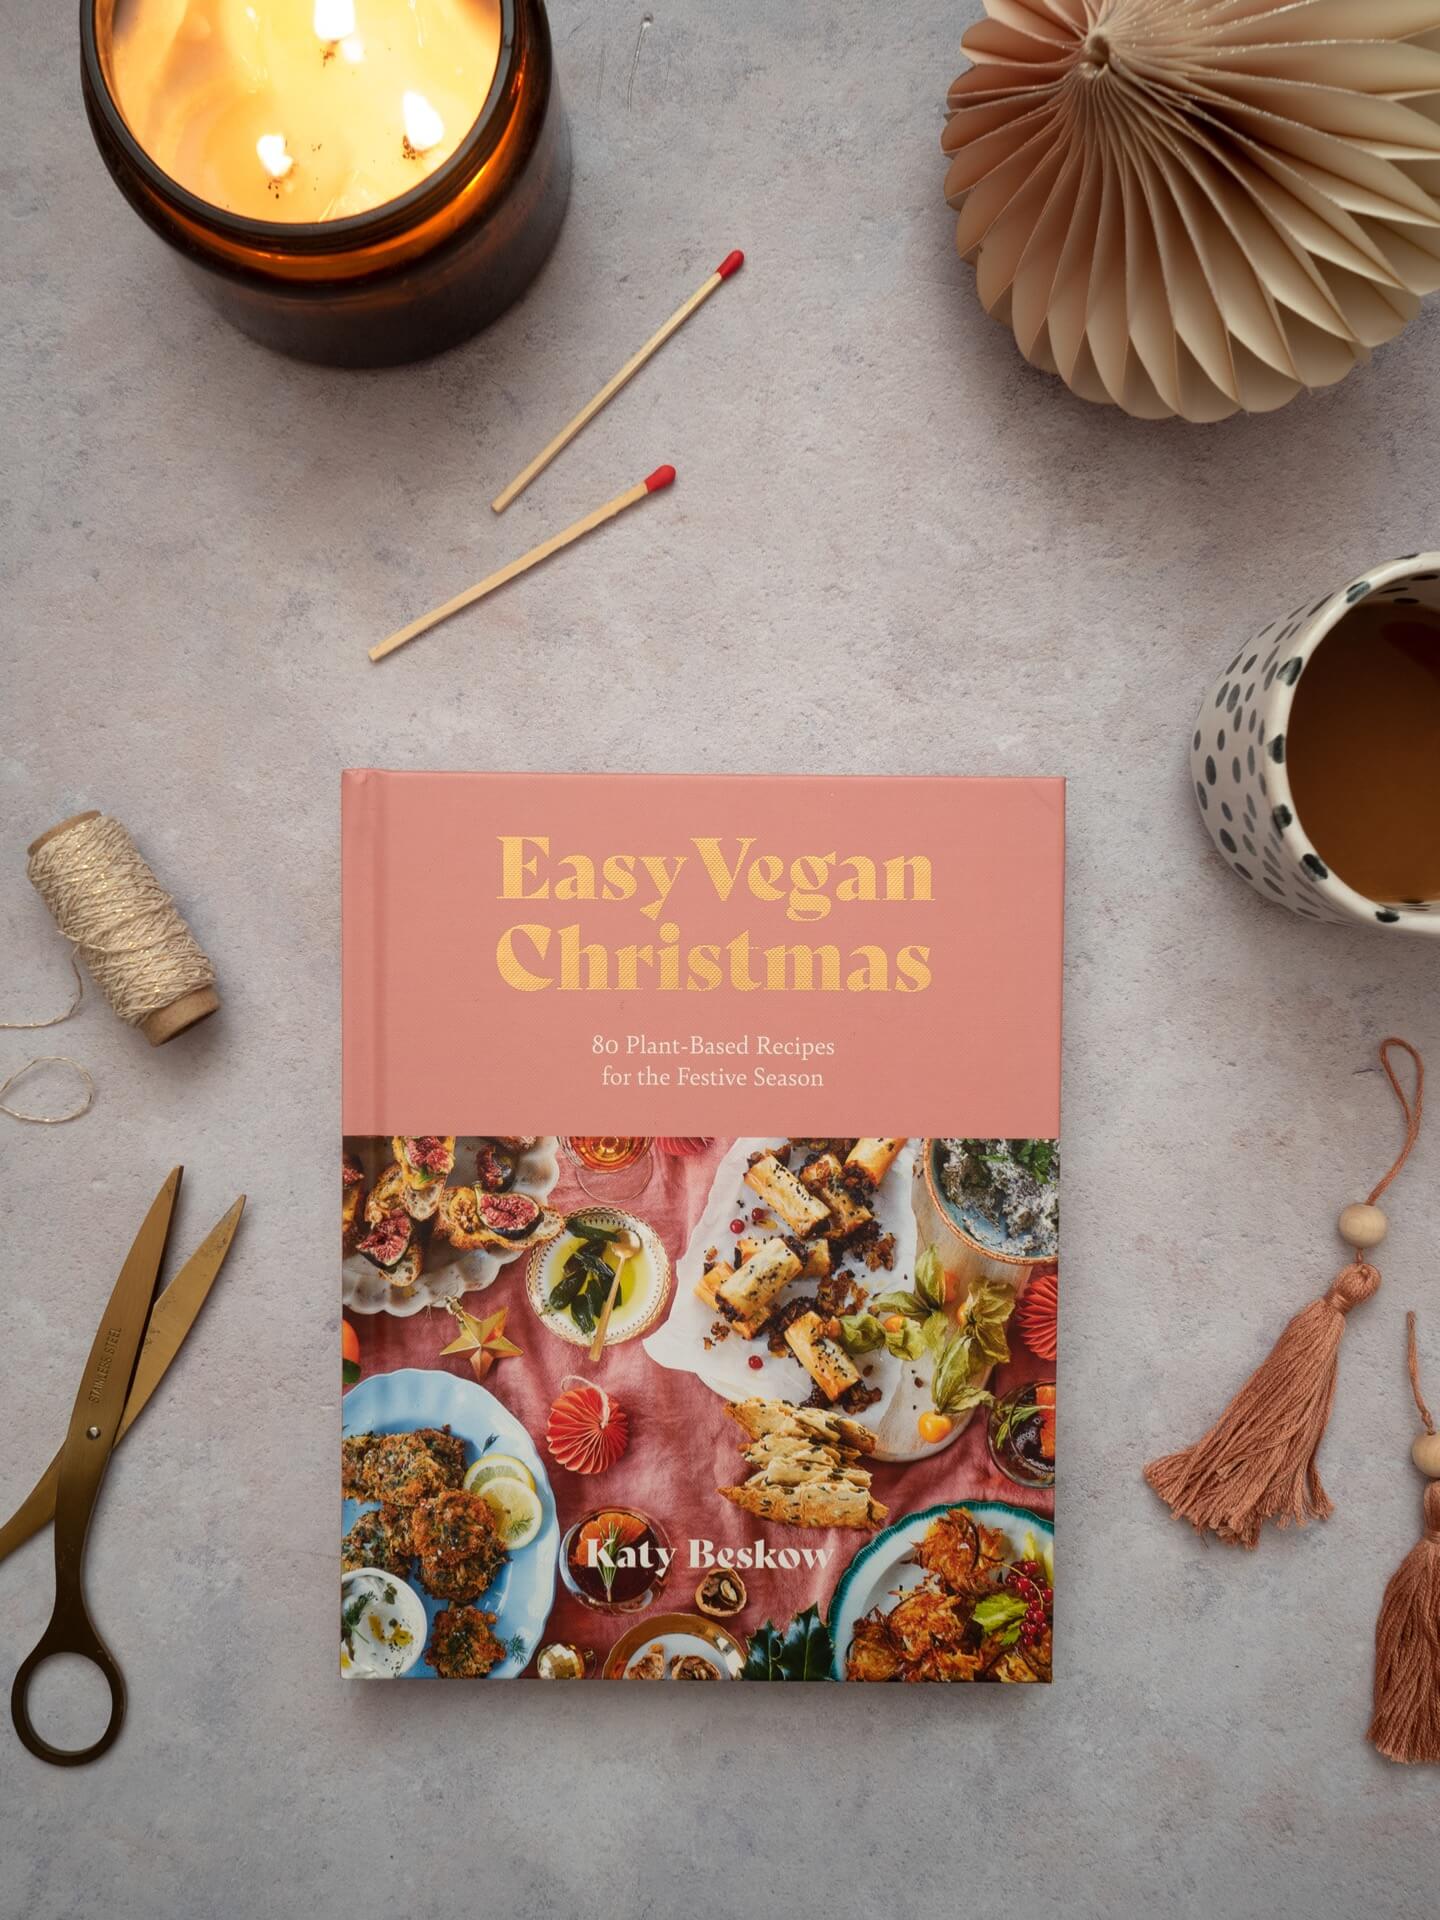 Easy Vegan Christmas recipe book by Katy Beskow